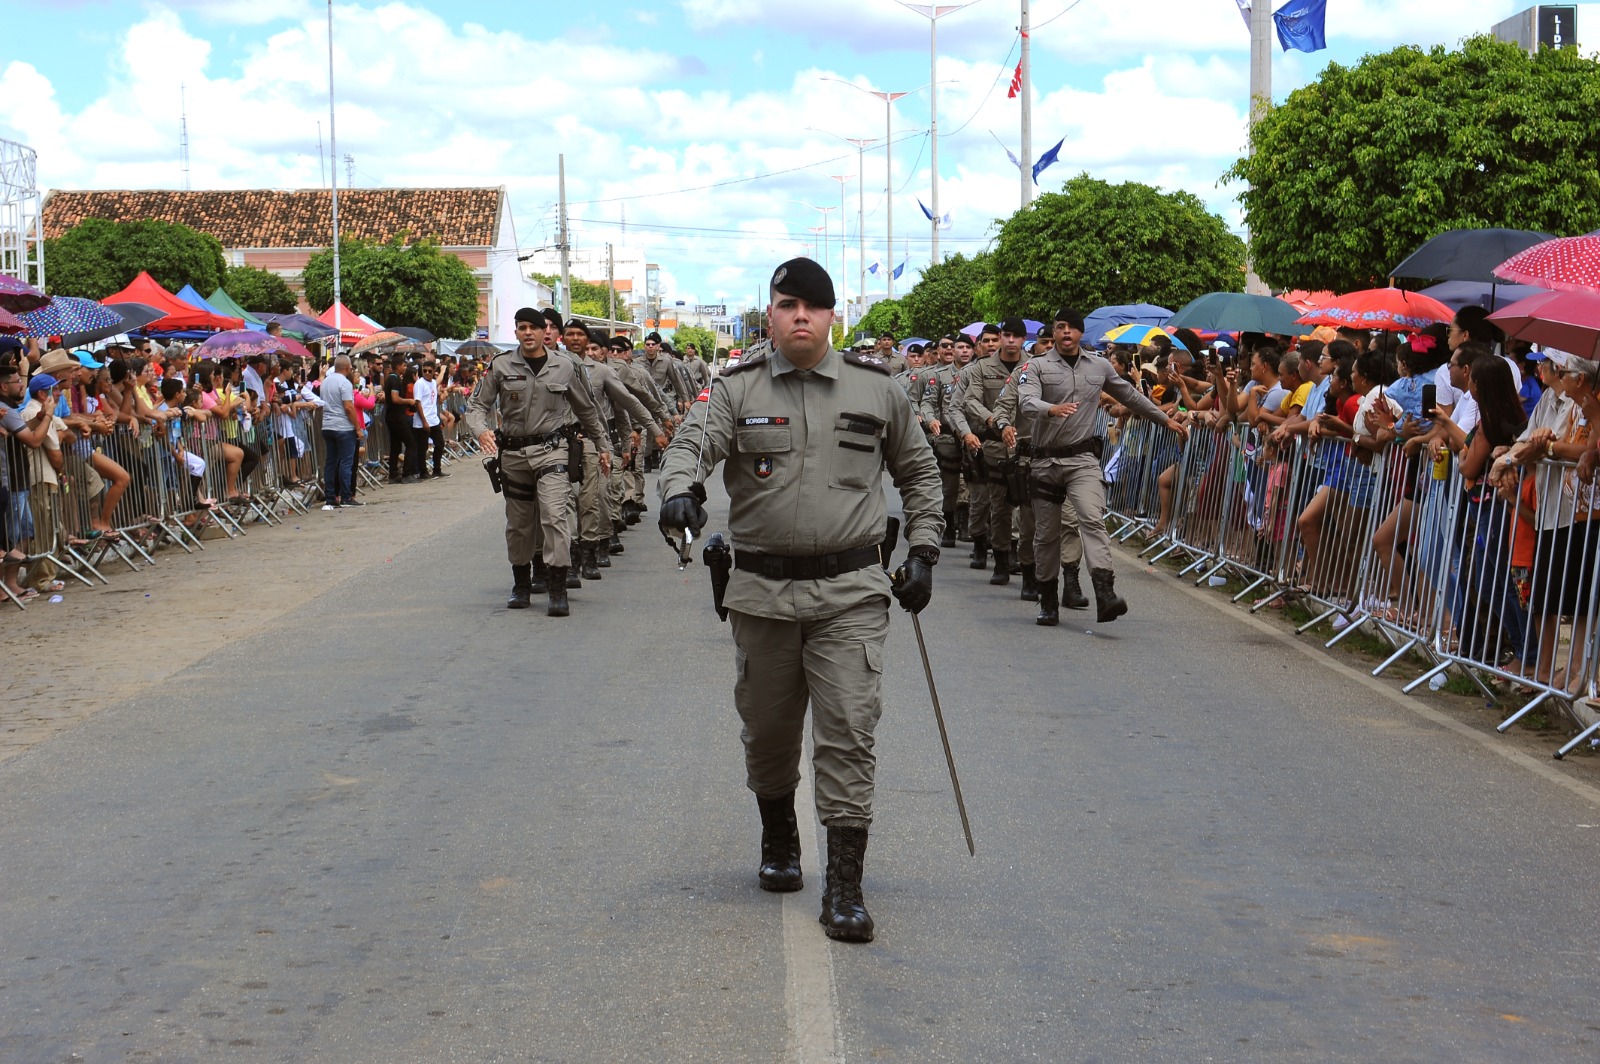 Desfiles-Civicos-em-Monteiro-acontecem-com-grande-presenca-de-publico-e-autoridades-19 Desfiles Cívicos em Monteiro acontecem com grande presença de público e autoridades